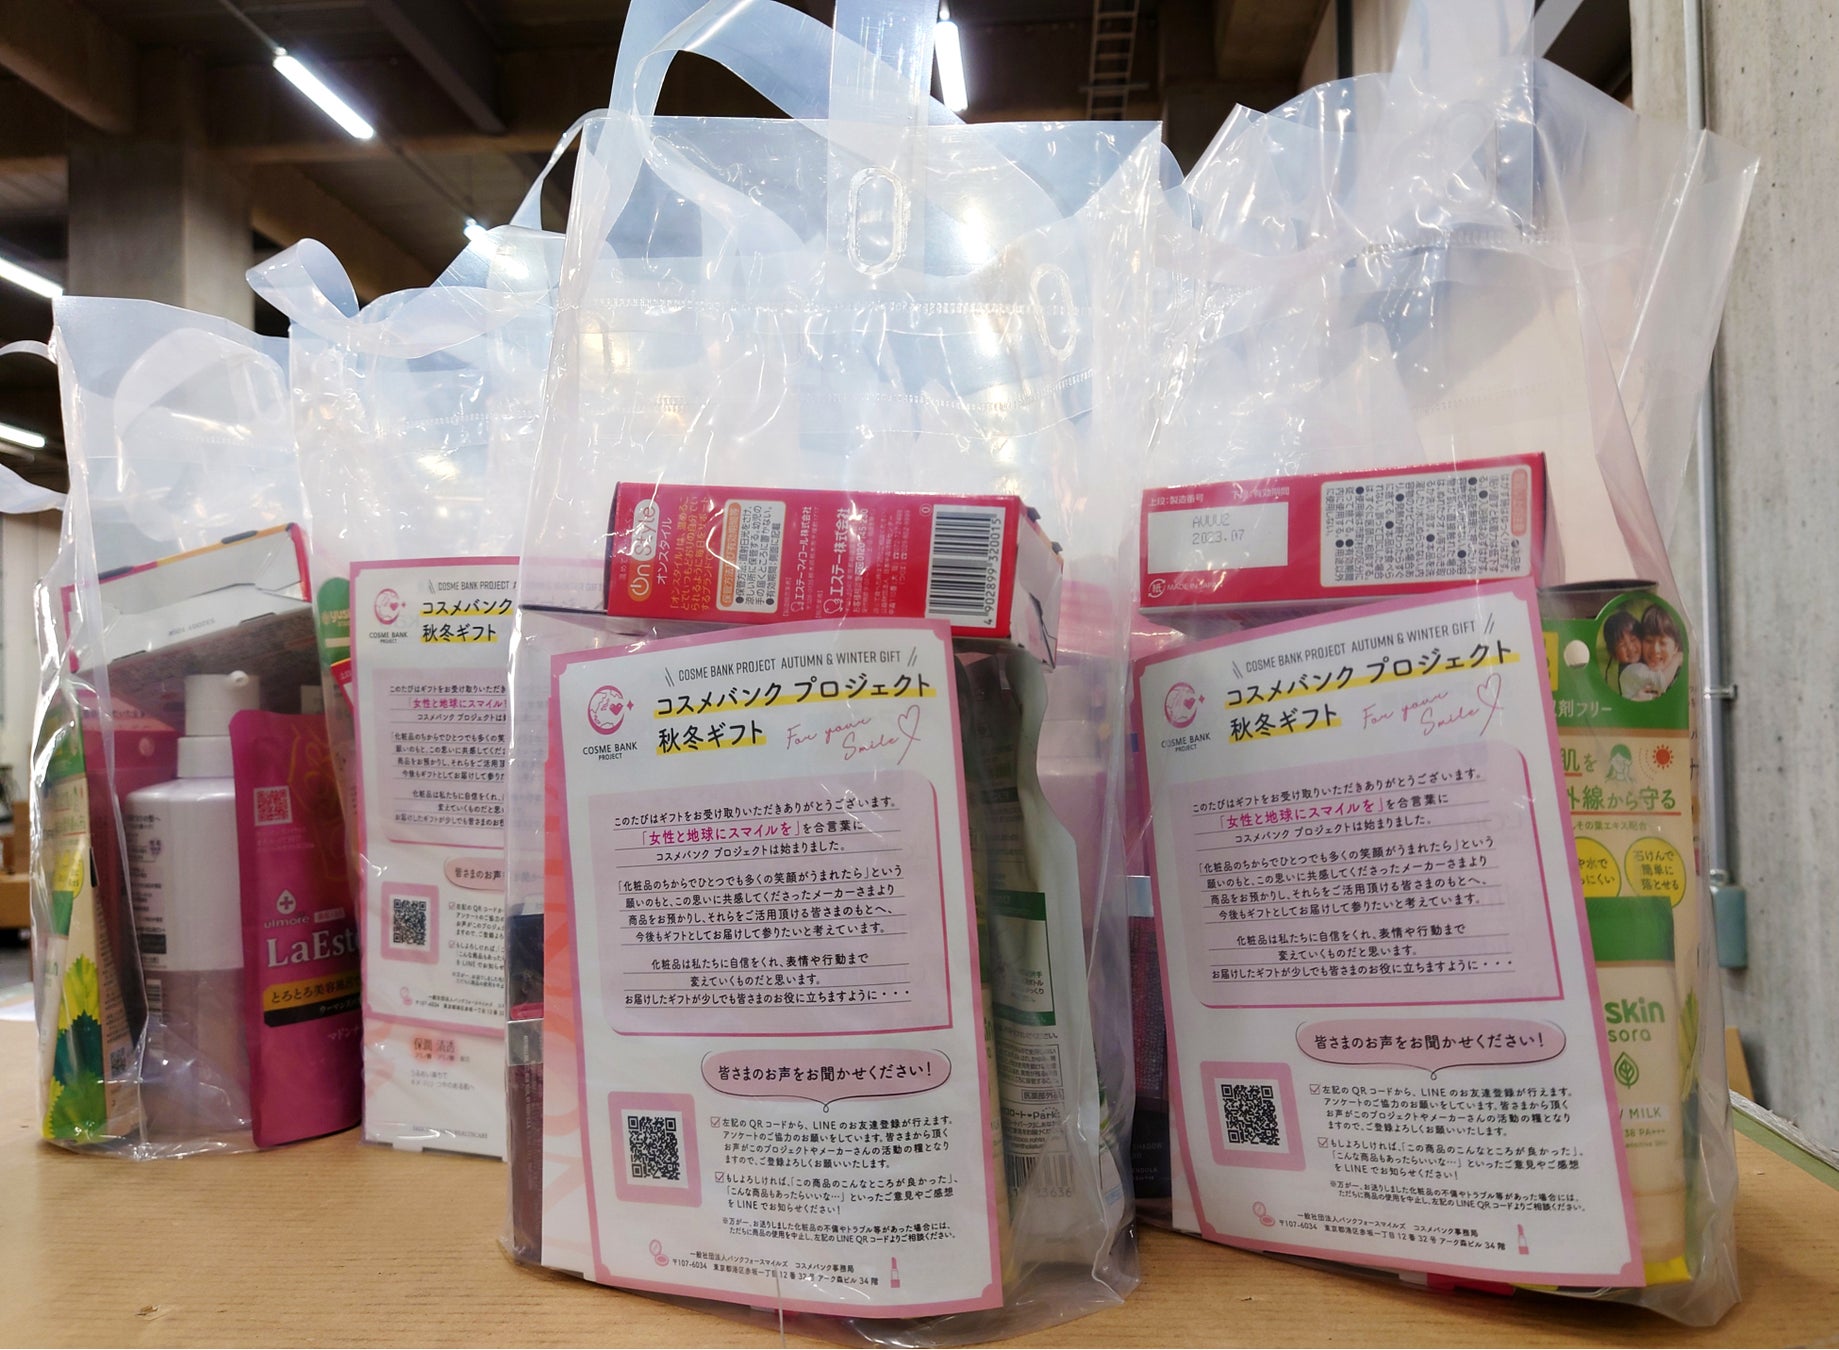 神奈川県「ふるさと納税」の返礼品として「横浜天然温泉SPA EAS入館ギフト券」の提供を開始